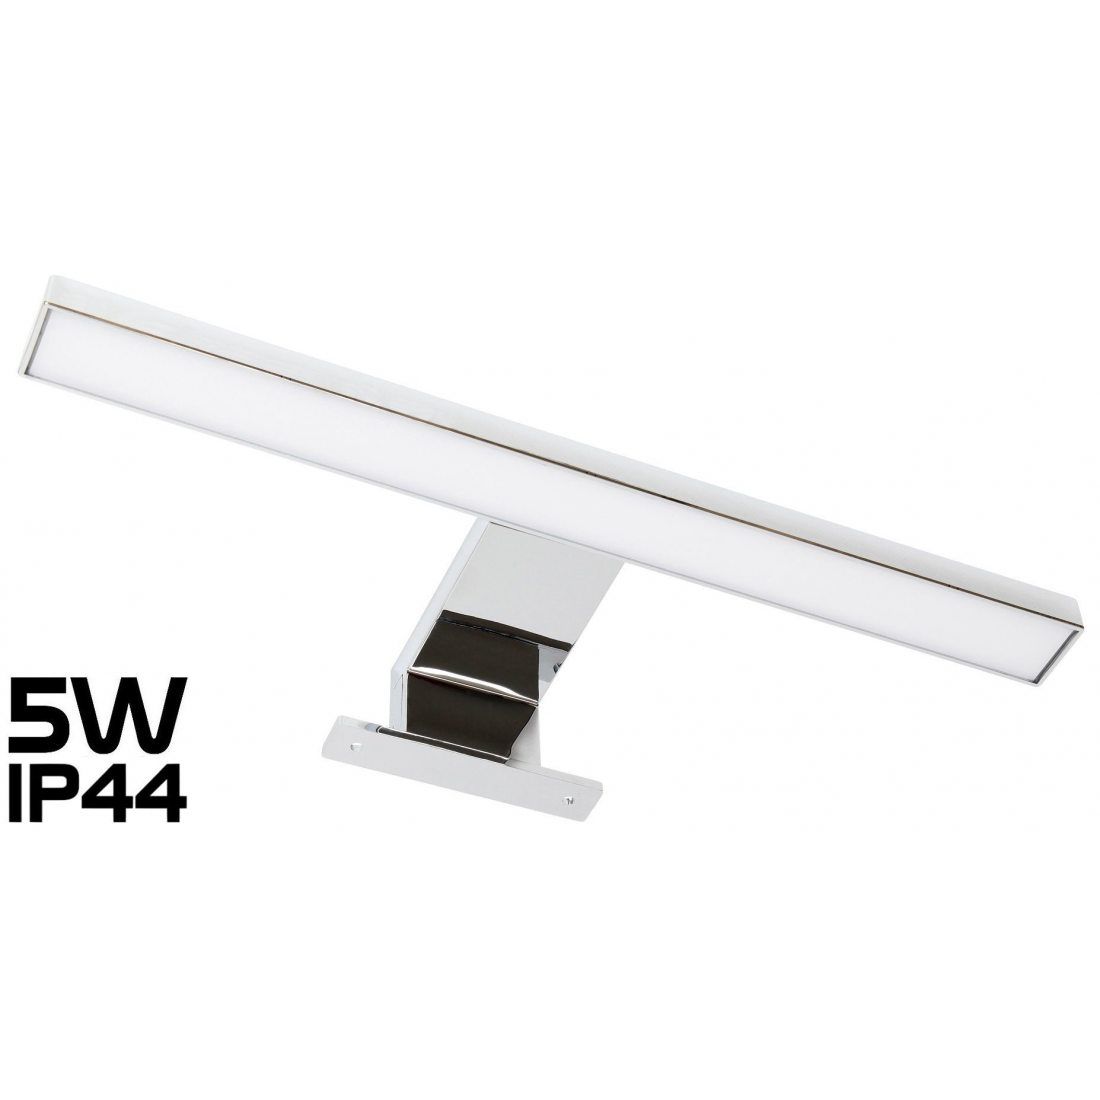 Éclairage LED pour miroir de pièce humide, en aluminium IP44 305 mm 230 V 4,5 W 220 lm Blanc chaud 3000 K